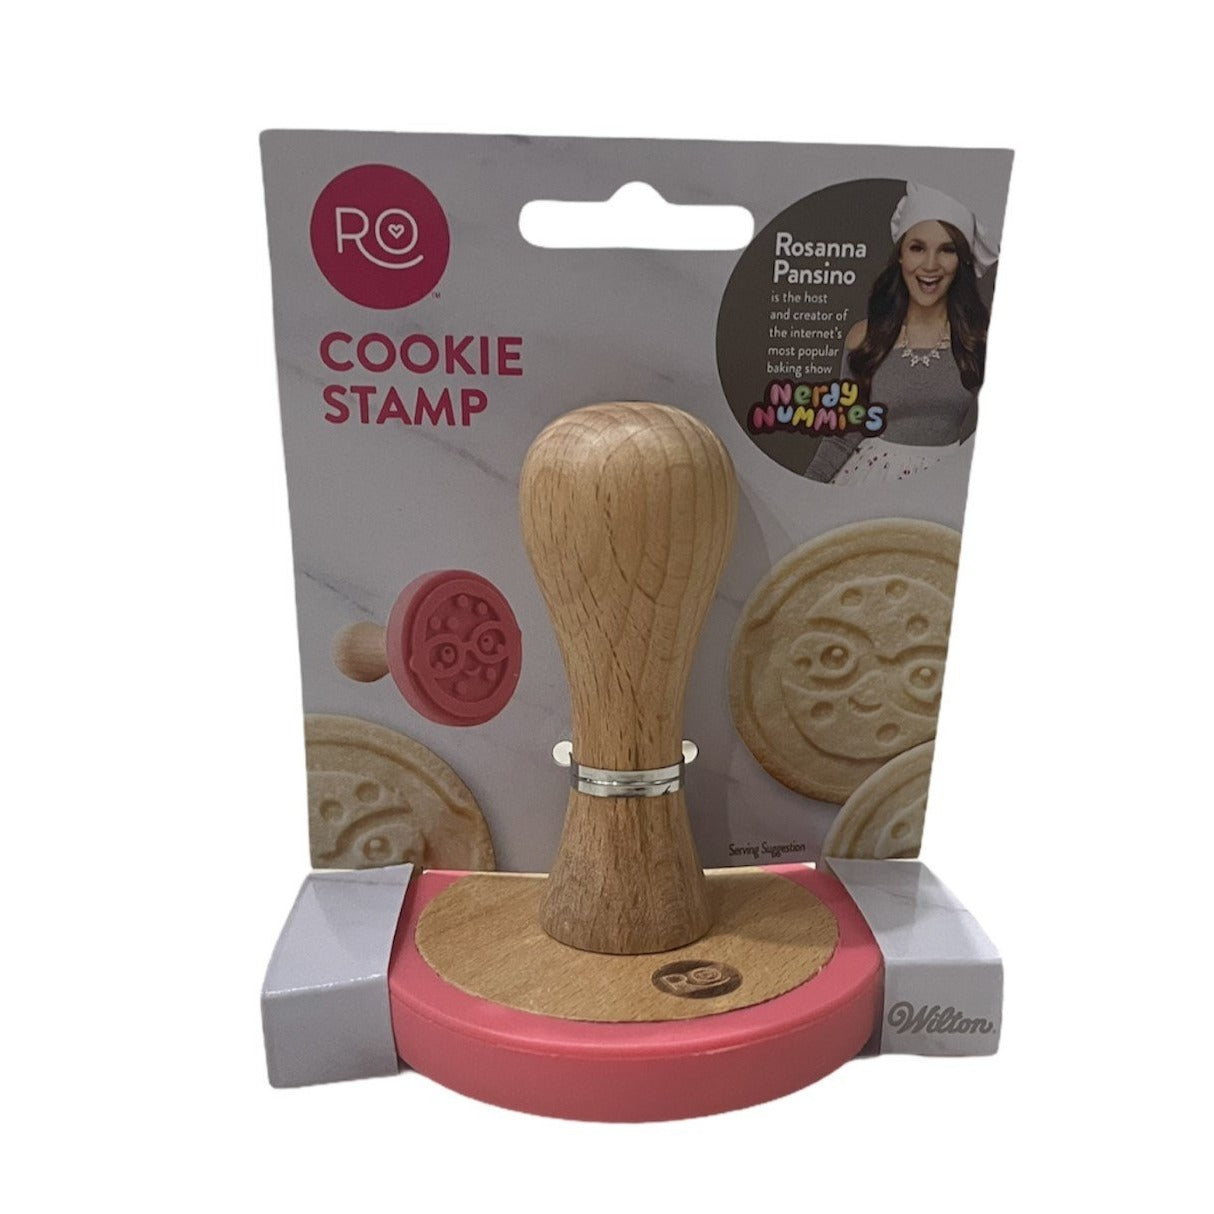 Rosanna Pansino By Wilton Nerdy Nummies Round Cookie Stamp Baking